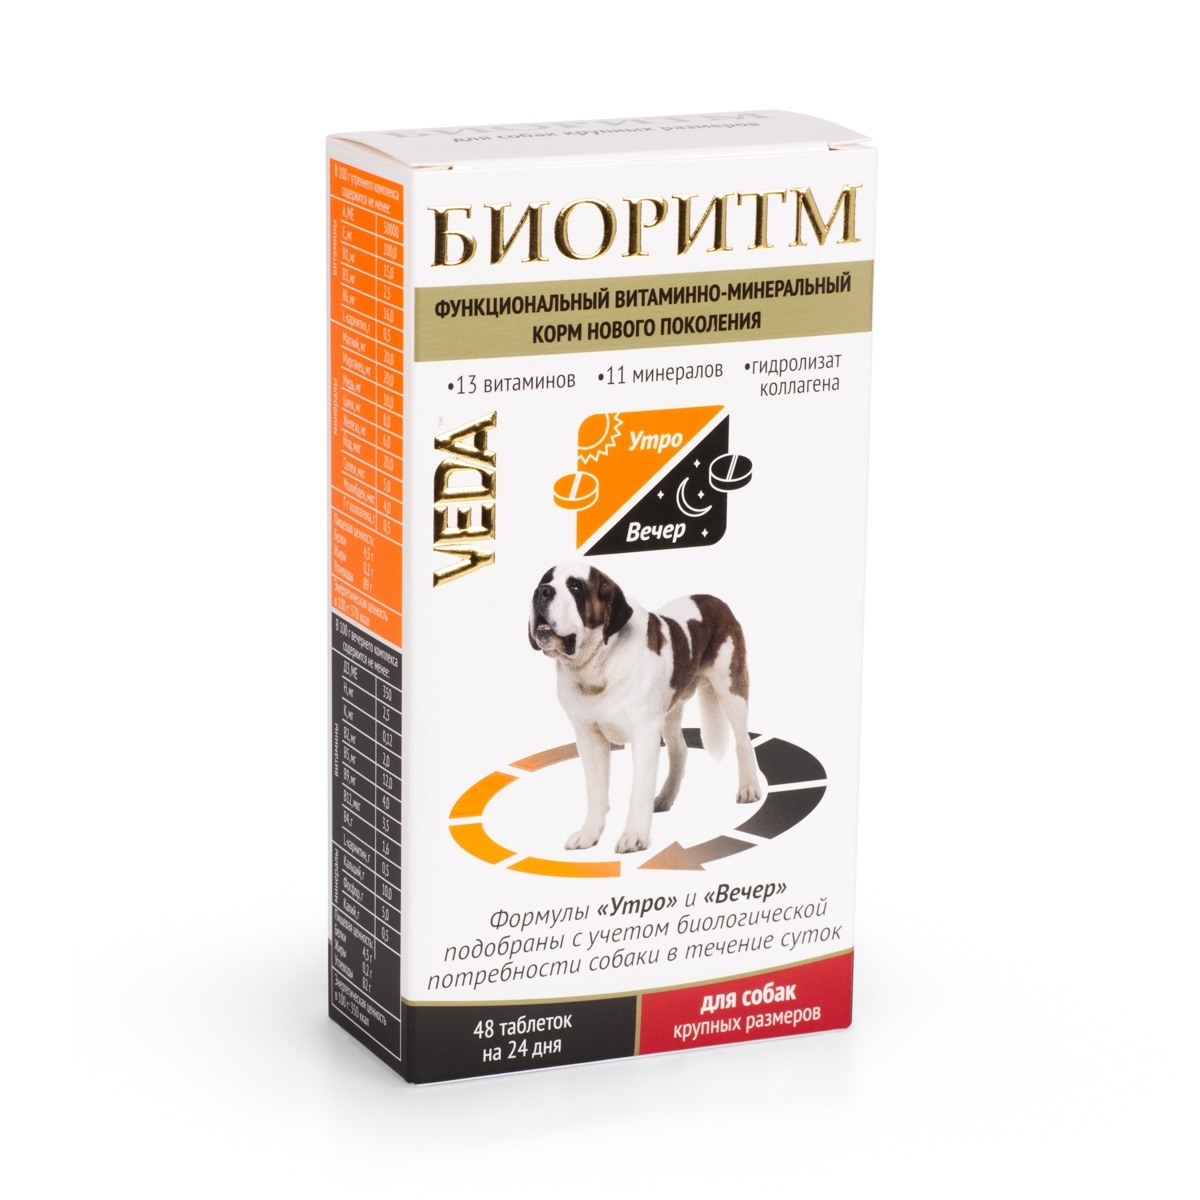 Веда Веда биоритм витамины для собак крупных пород (20 г) веда веда биоритм витамины для собак малых пород 46 г